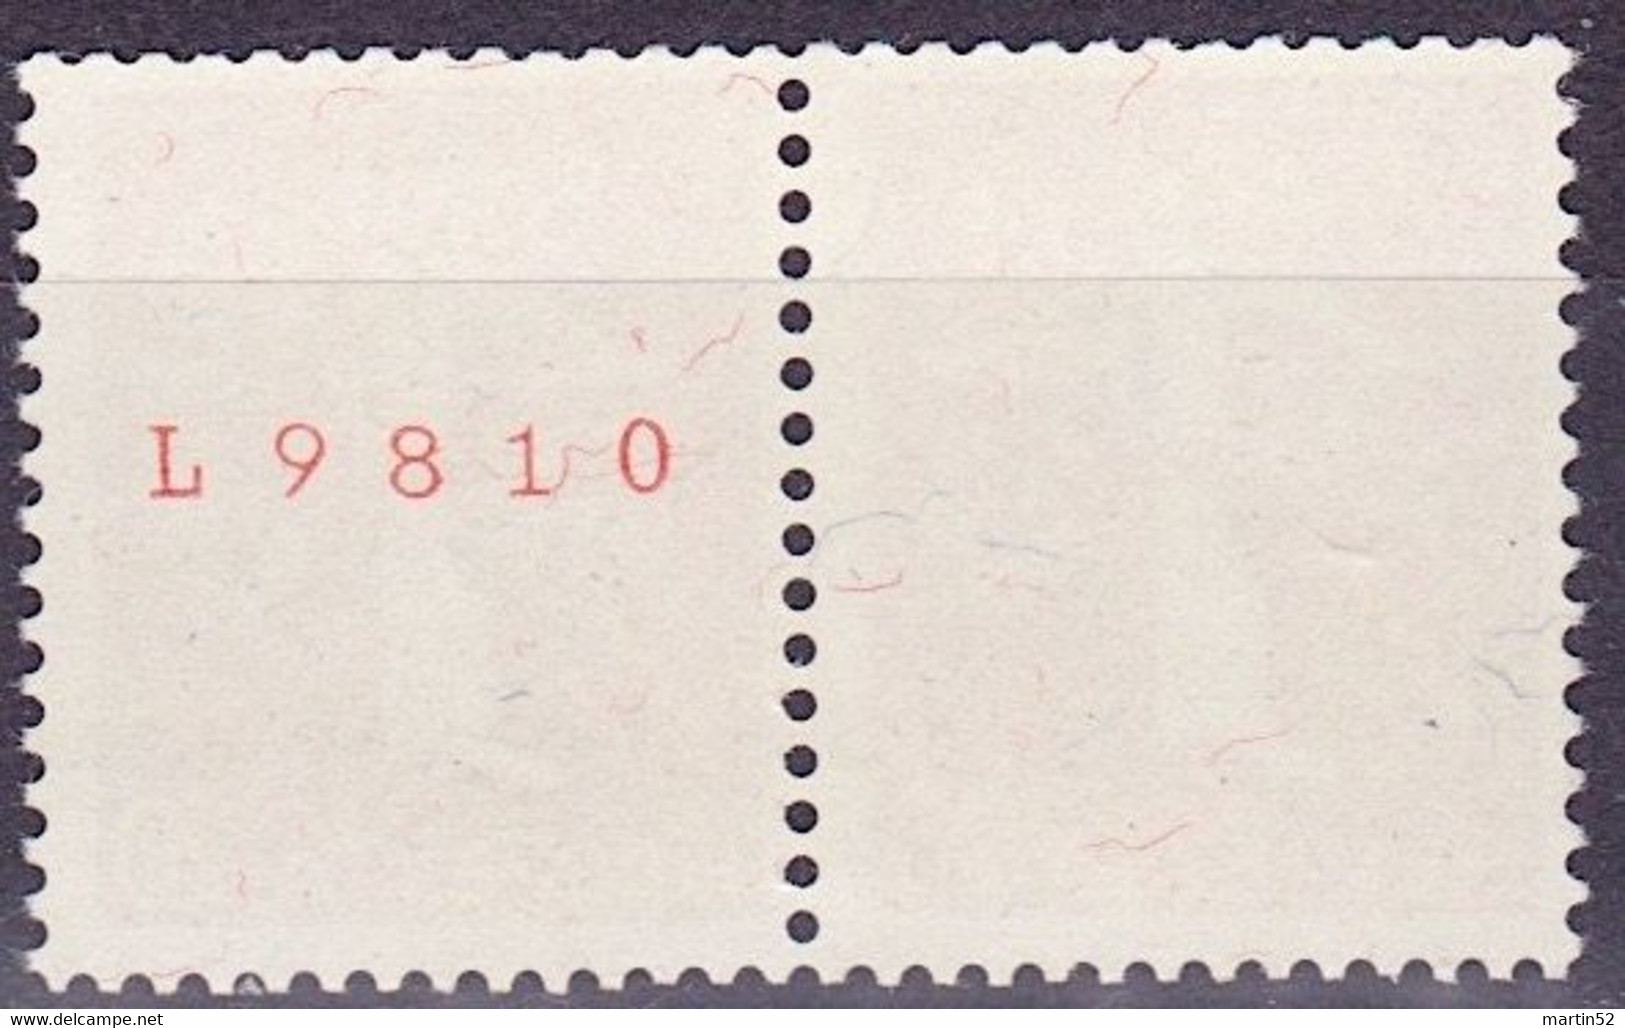 Schweiz Suisse 1939: Zusammendruck Se-tenant Zu Z27e Mi W21 ** Mit Nr. Avec N° L9810 Postfrisch MNH (Zumstein CHF 30.00) - Rouleaux